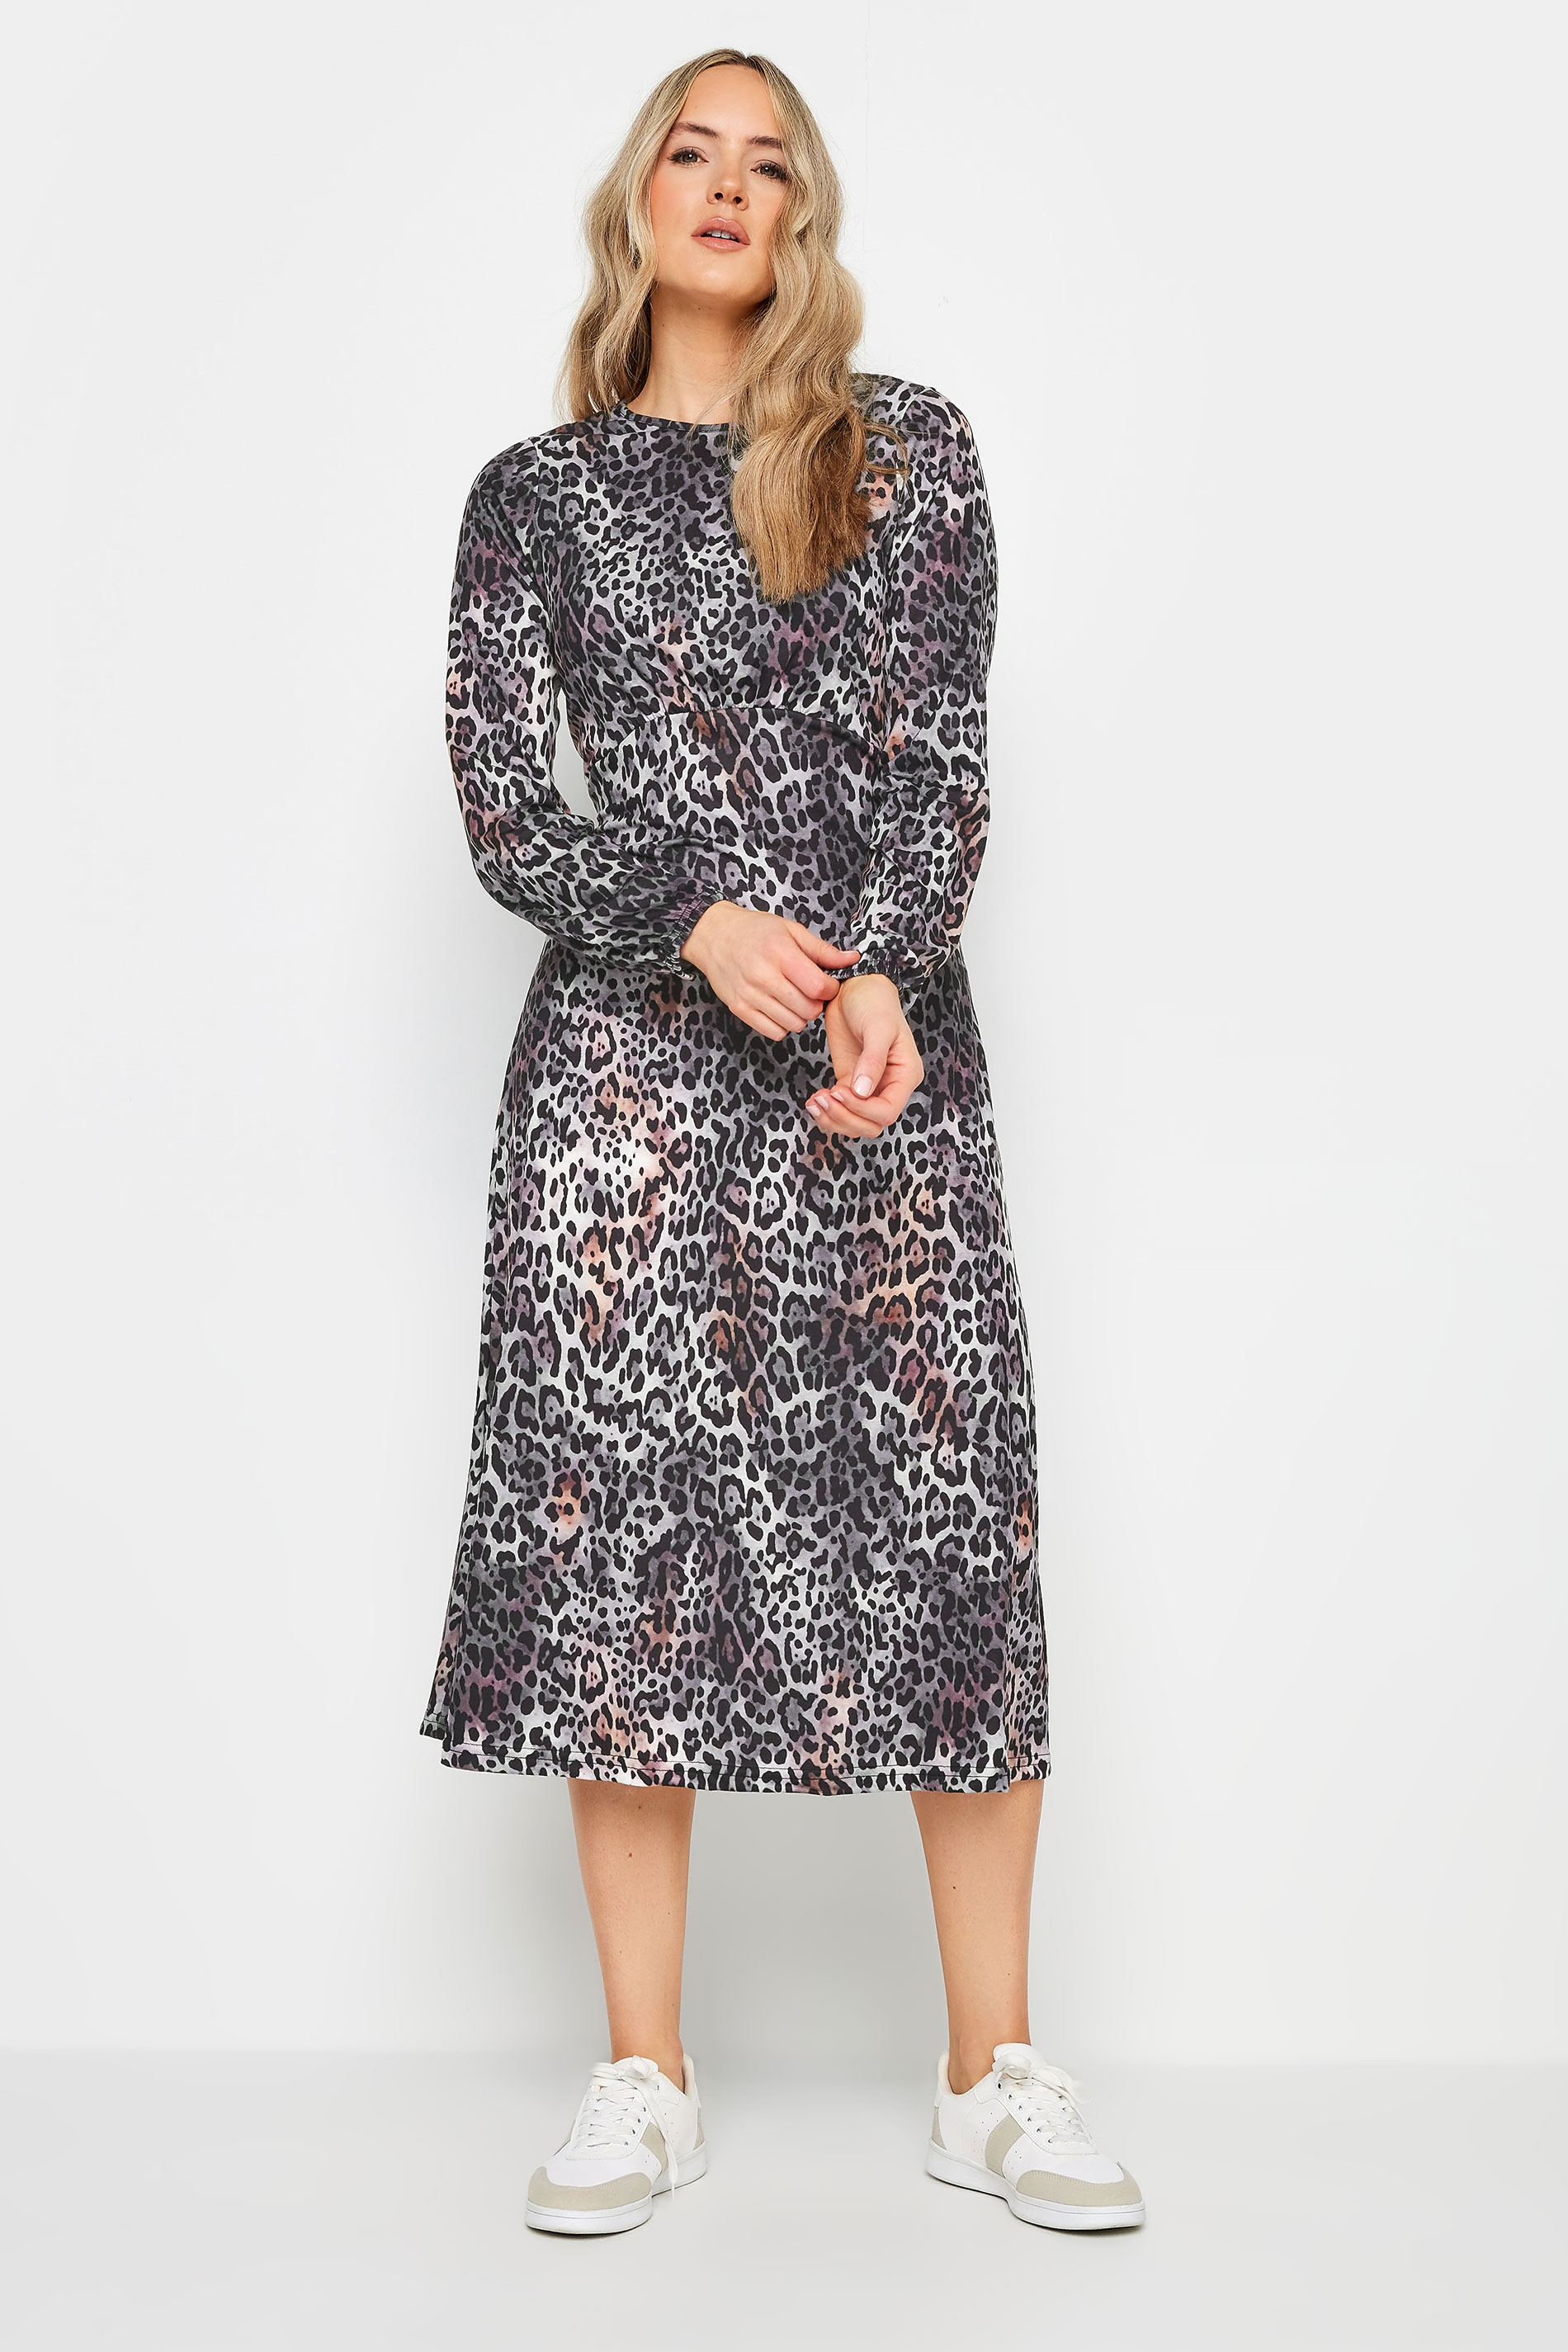 LTS Tall Women's Grey Leopard Print Midi Dress | Long Tall Sally 2